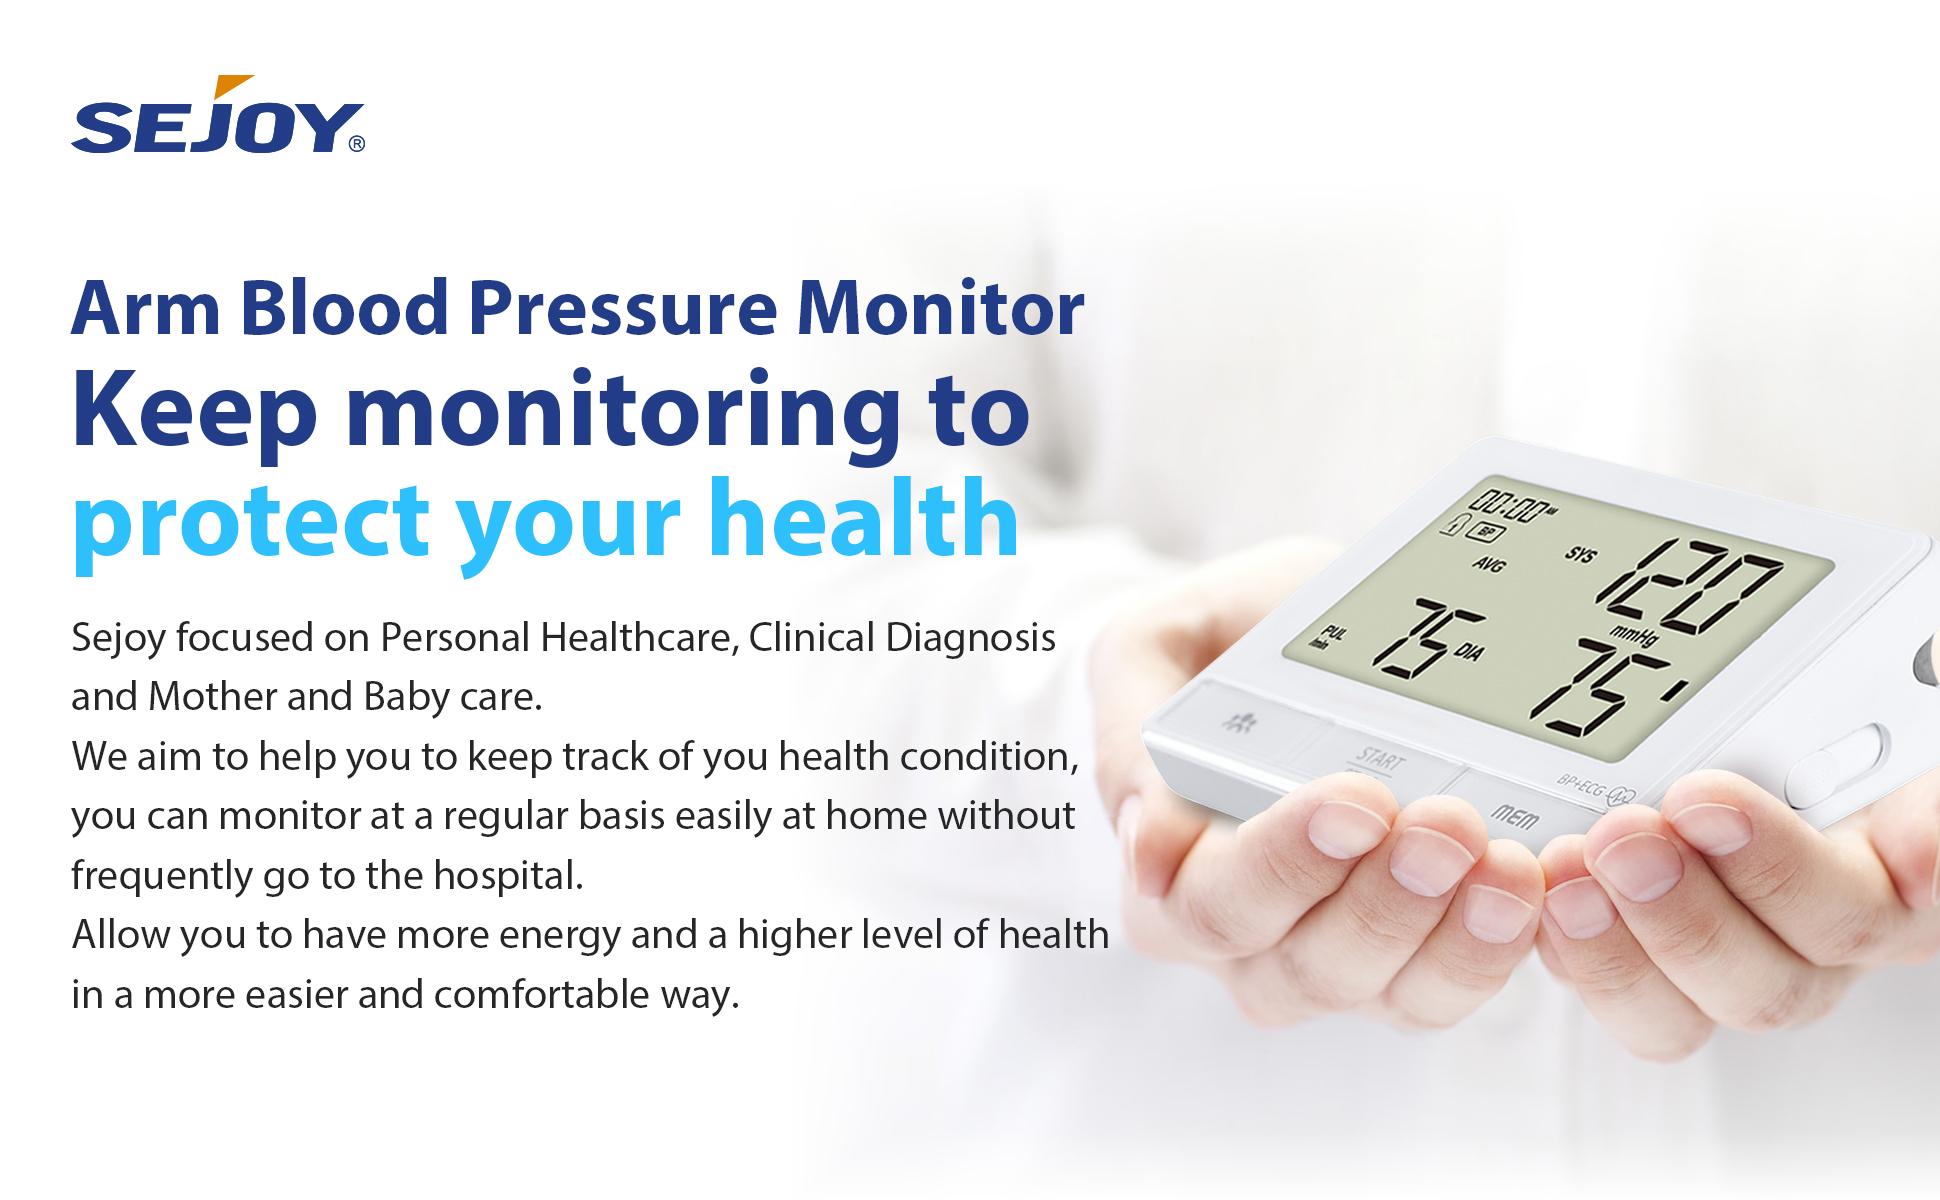 monitoreando tu salud